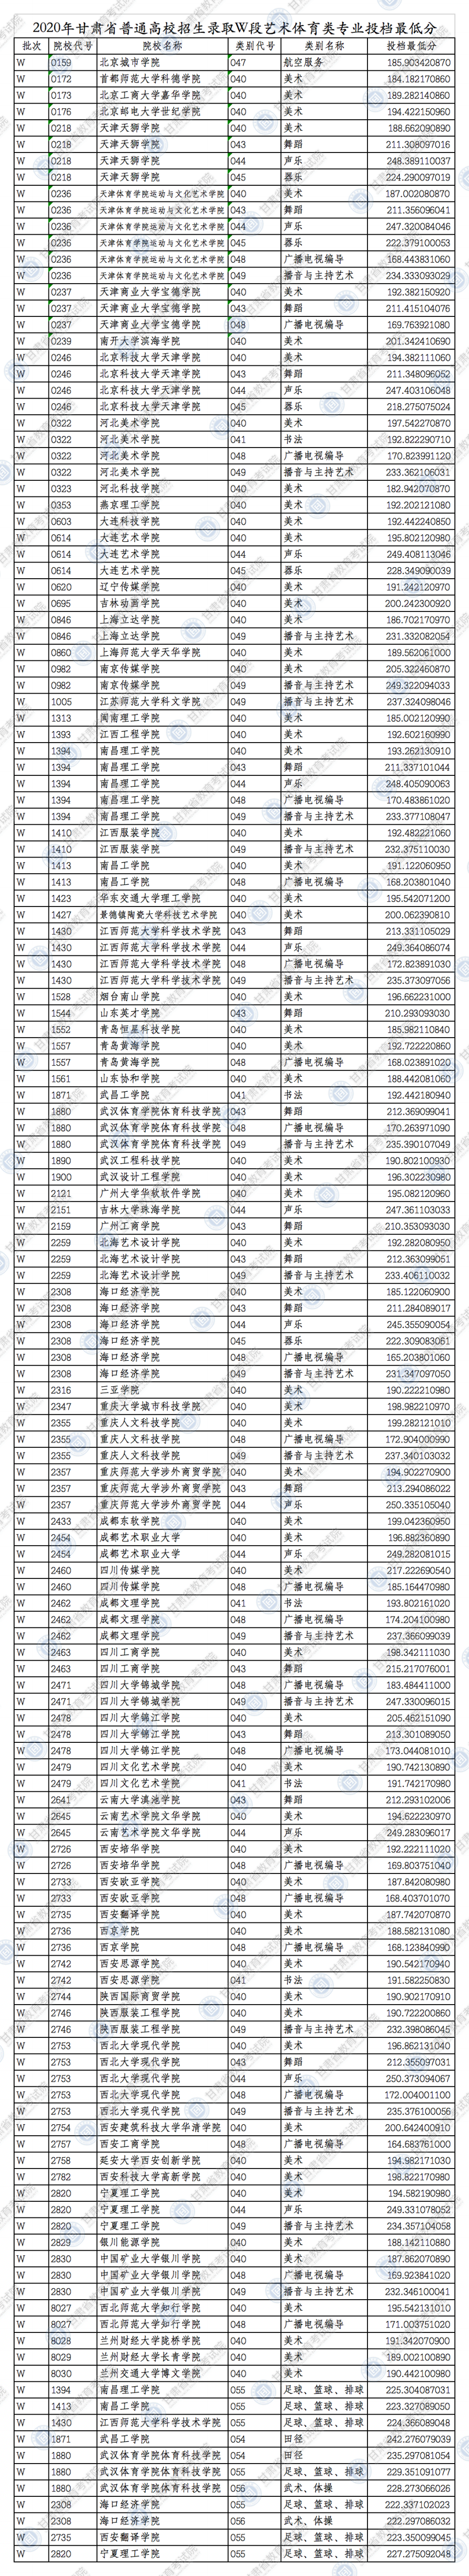 2020甘肃高考艺术体育类投档最低分一览表